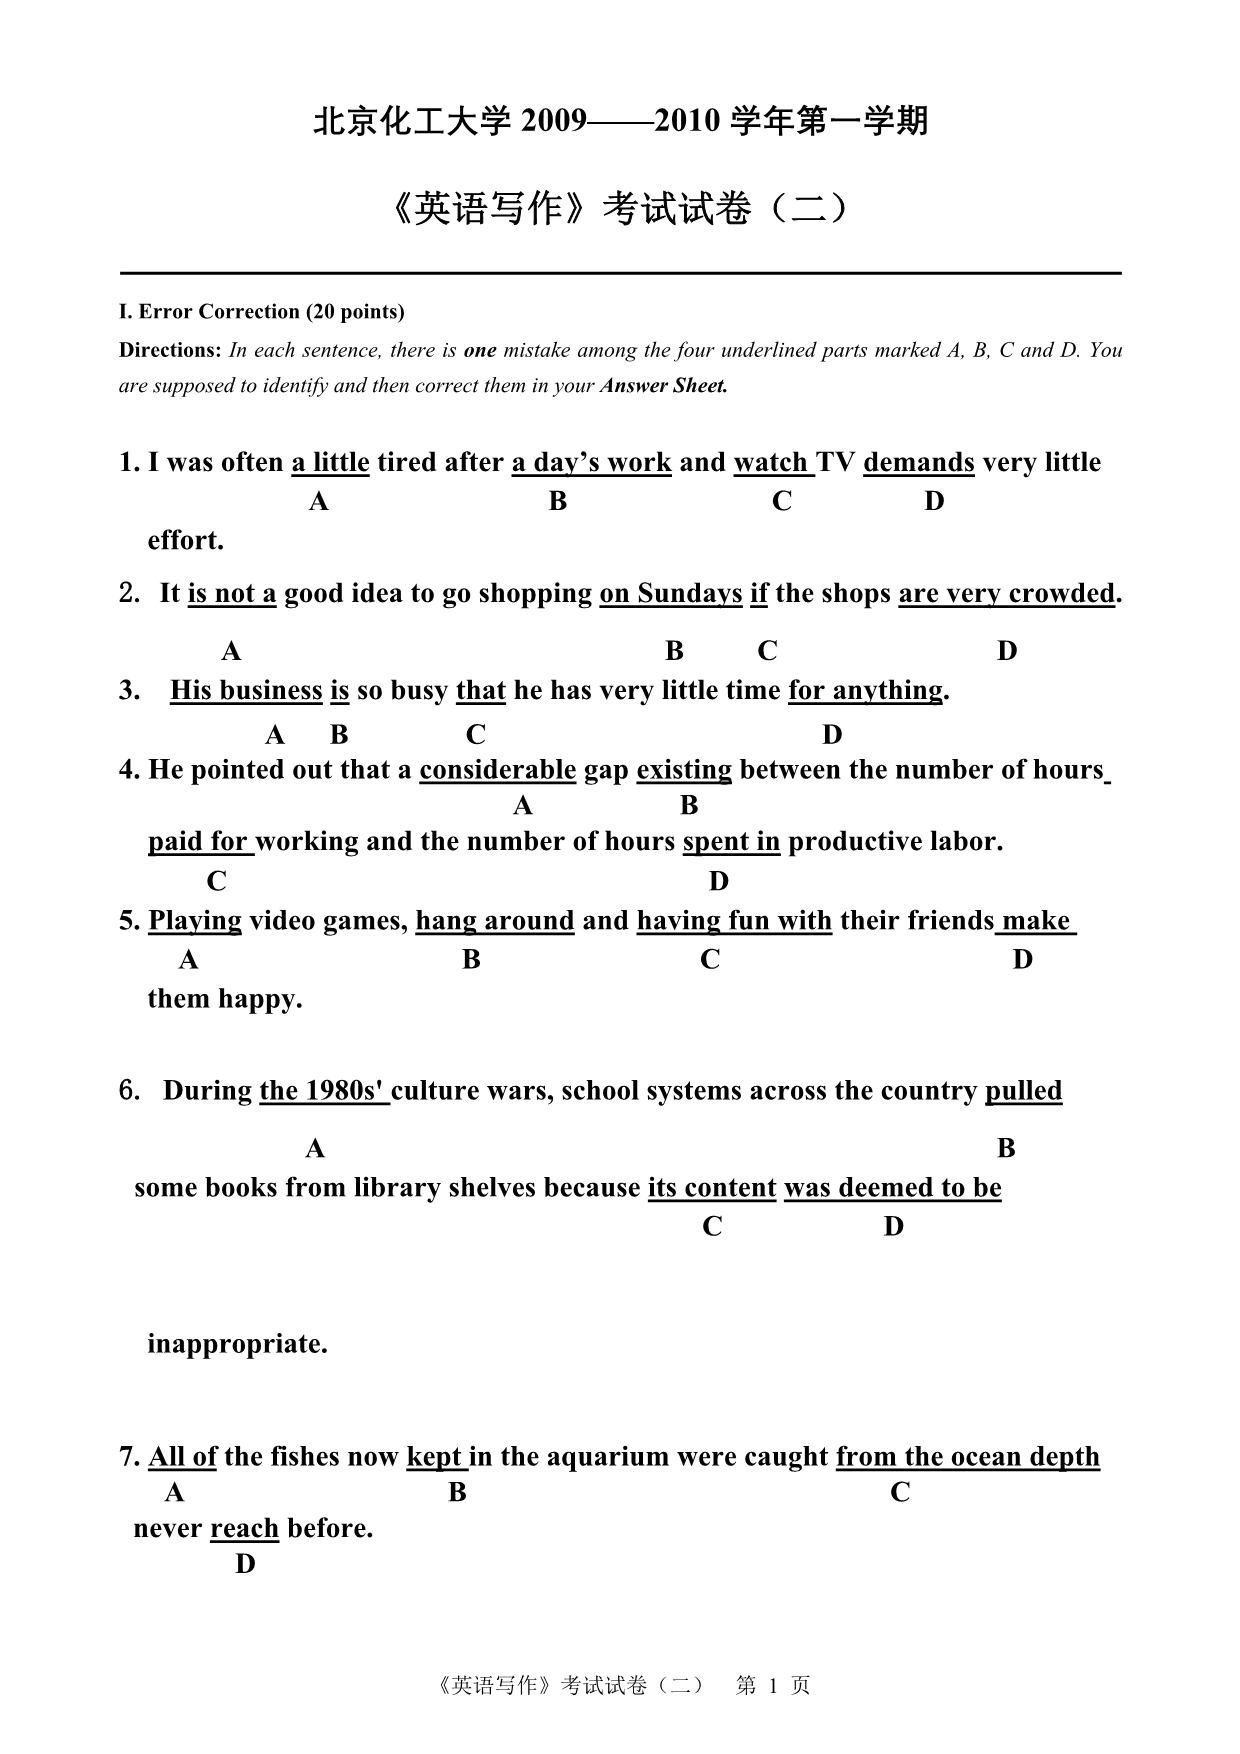 印刷版研究生《英语写作》考试试卷-2009-2010第一学期-黄欣_第1页